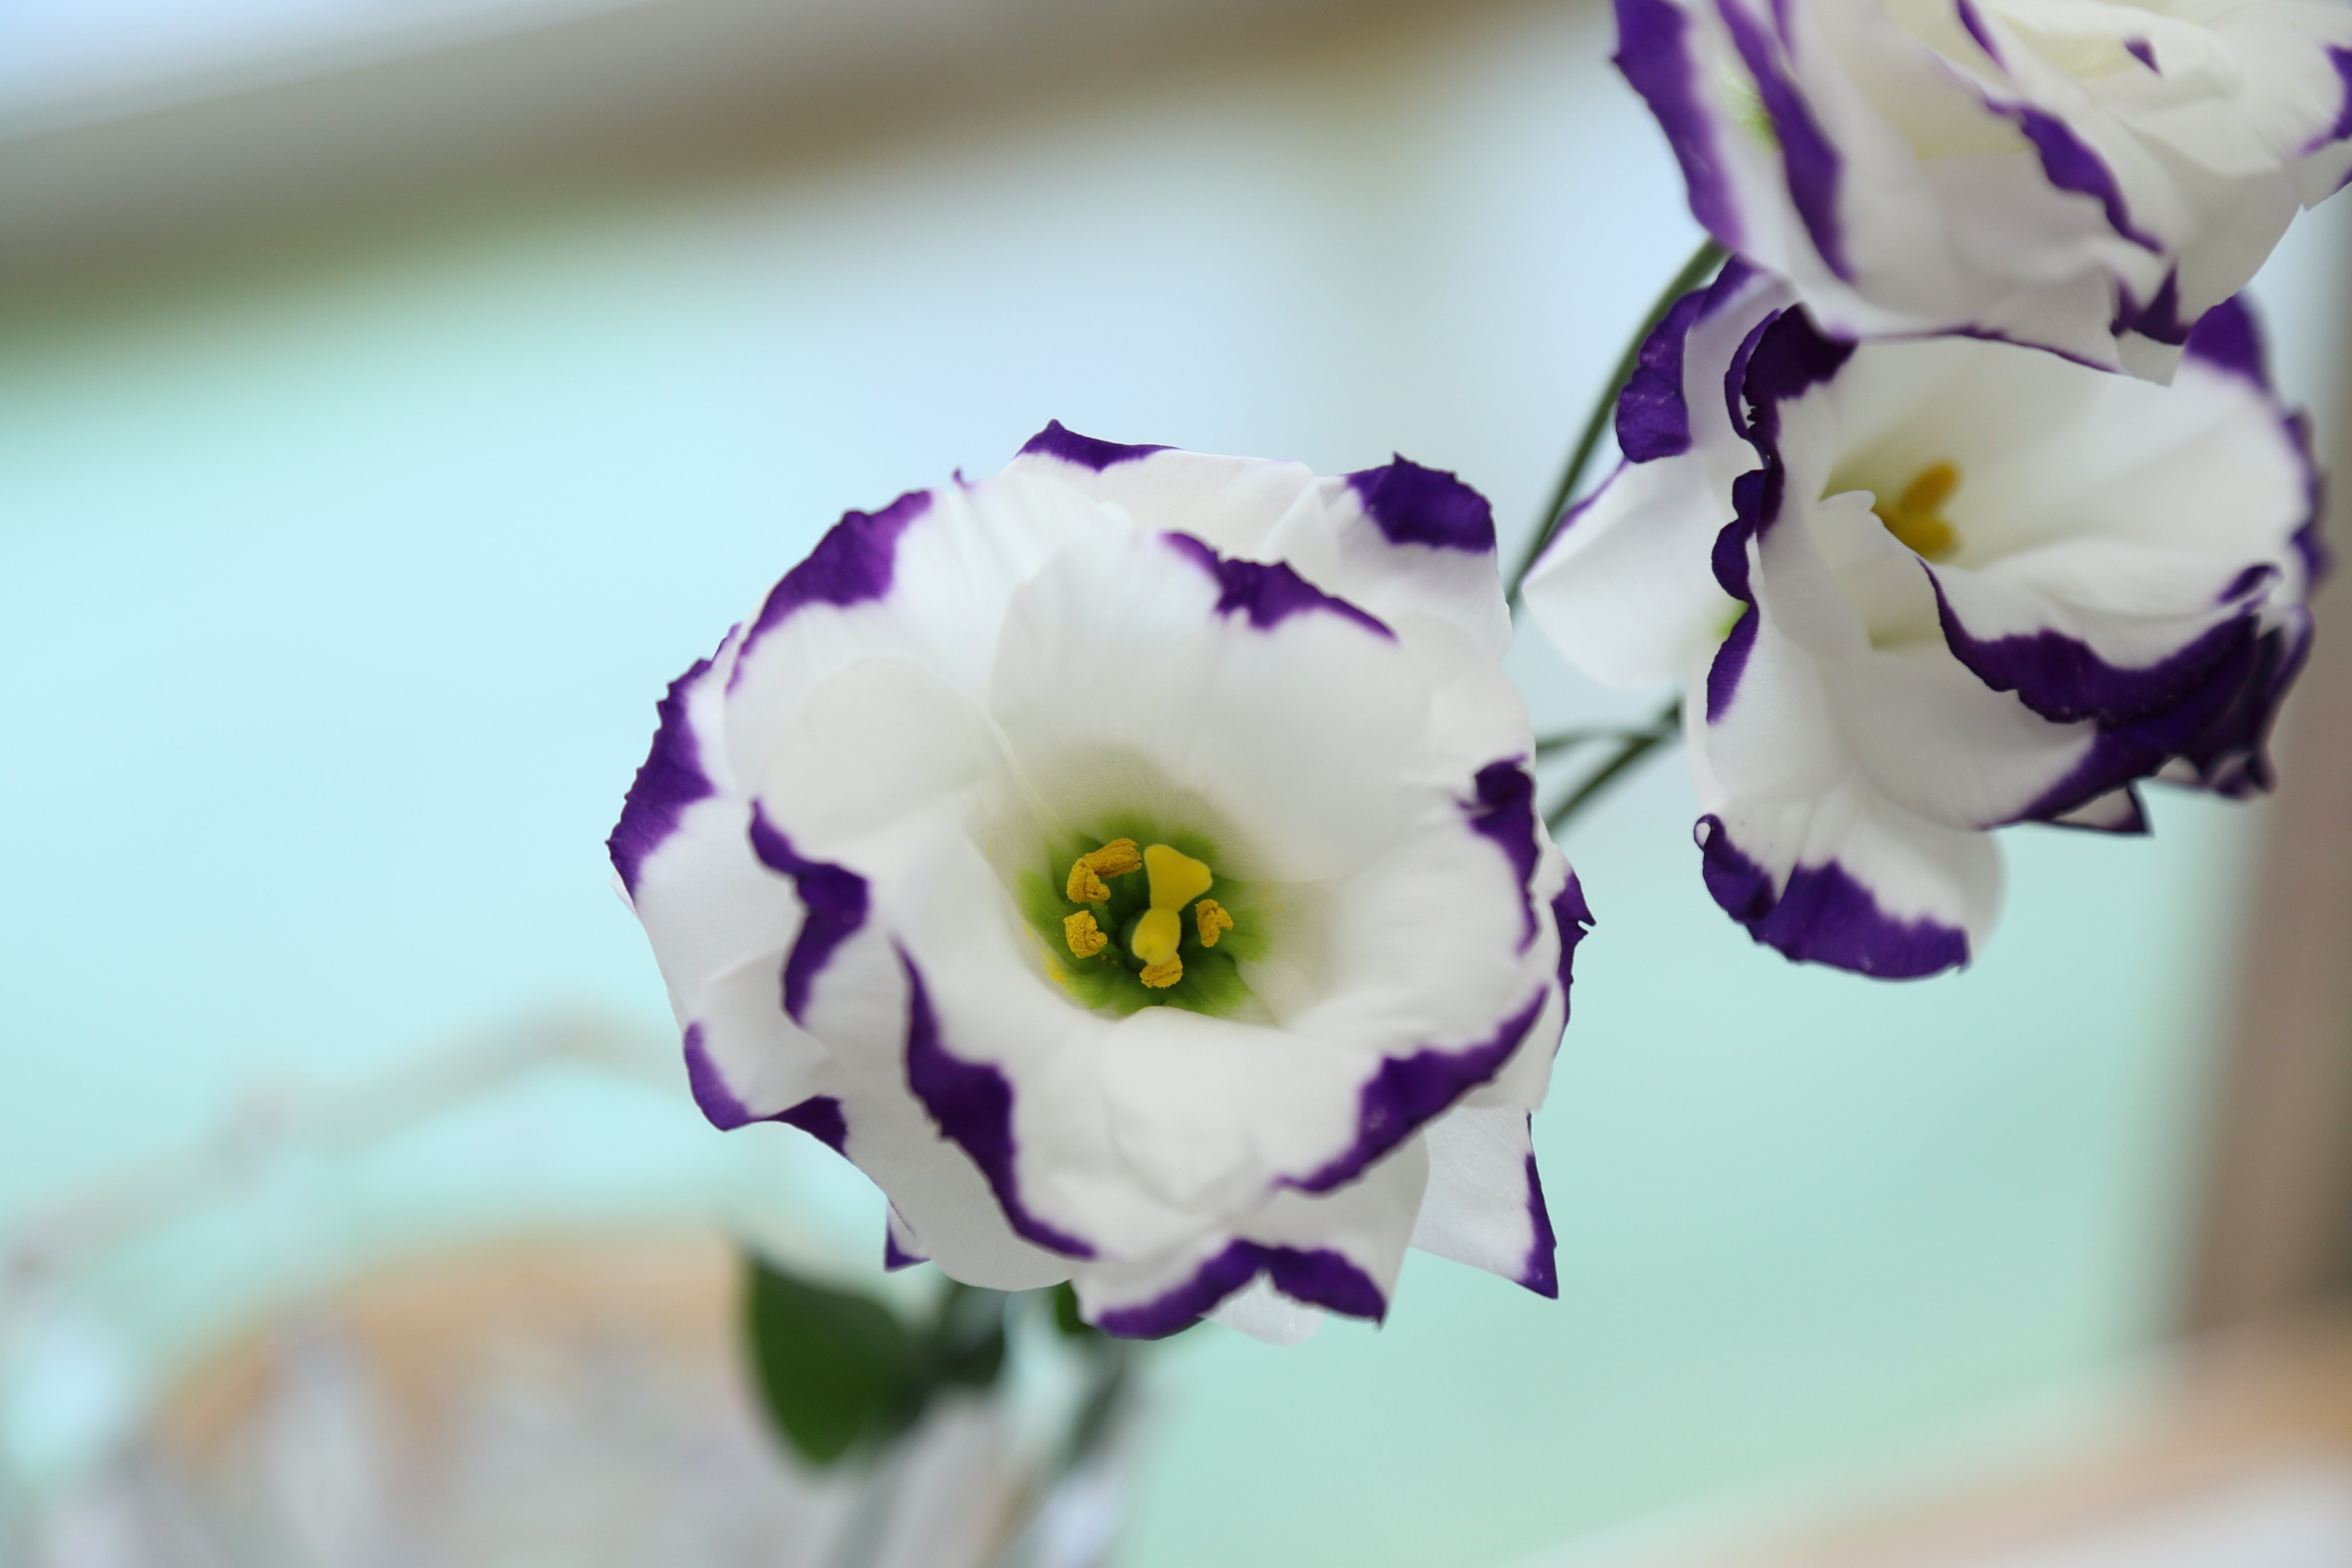 フォトスタジアム松田 トルコキキョウの花言葉は 優美 すがすがしい美しさ 紫のトルコキキョウの花言葉は 希望 白の トルコキキョウの花言葉は 思いやり ピンクのトルコキキョウの花言葉は 優美 T Co Fnm9boxqw7 Twitter